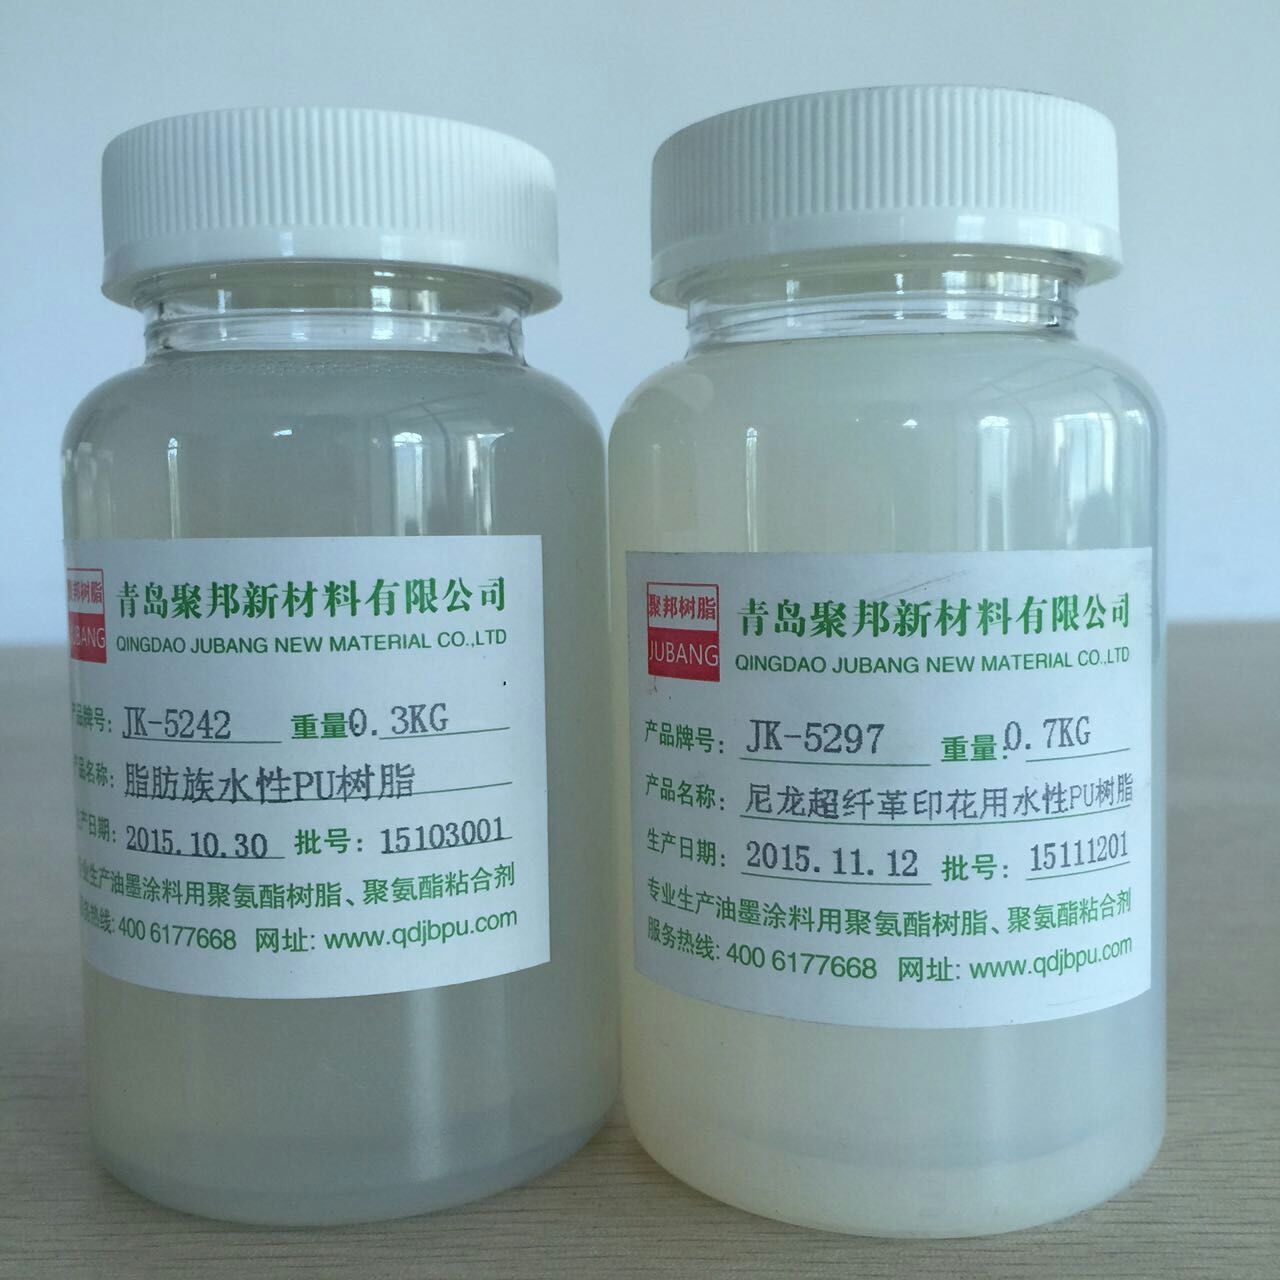 水性强力粘合剂供应用于植绒胶|贴合的水性强力粘合剂  水性聚氨酯树脂   聚氨酯树脂供应商